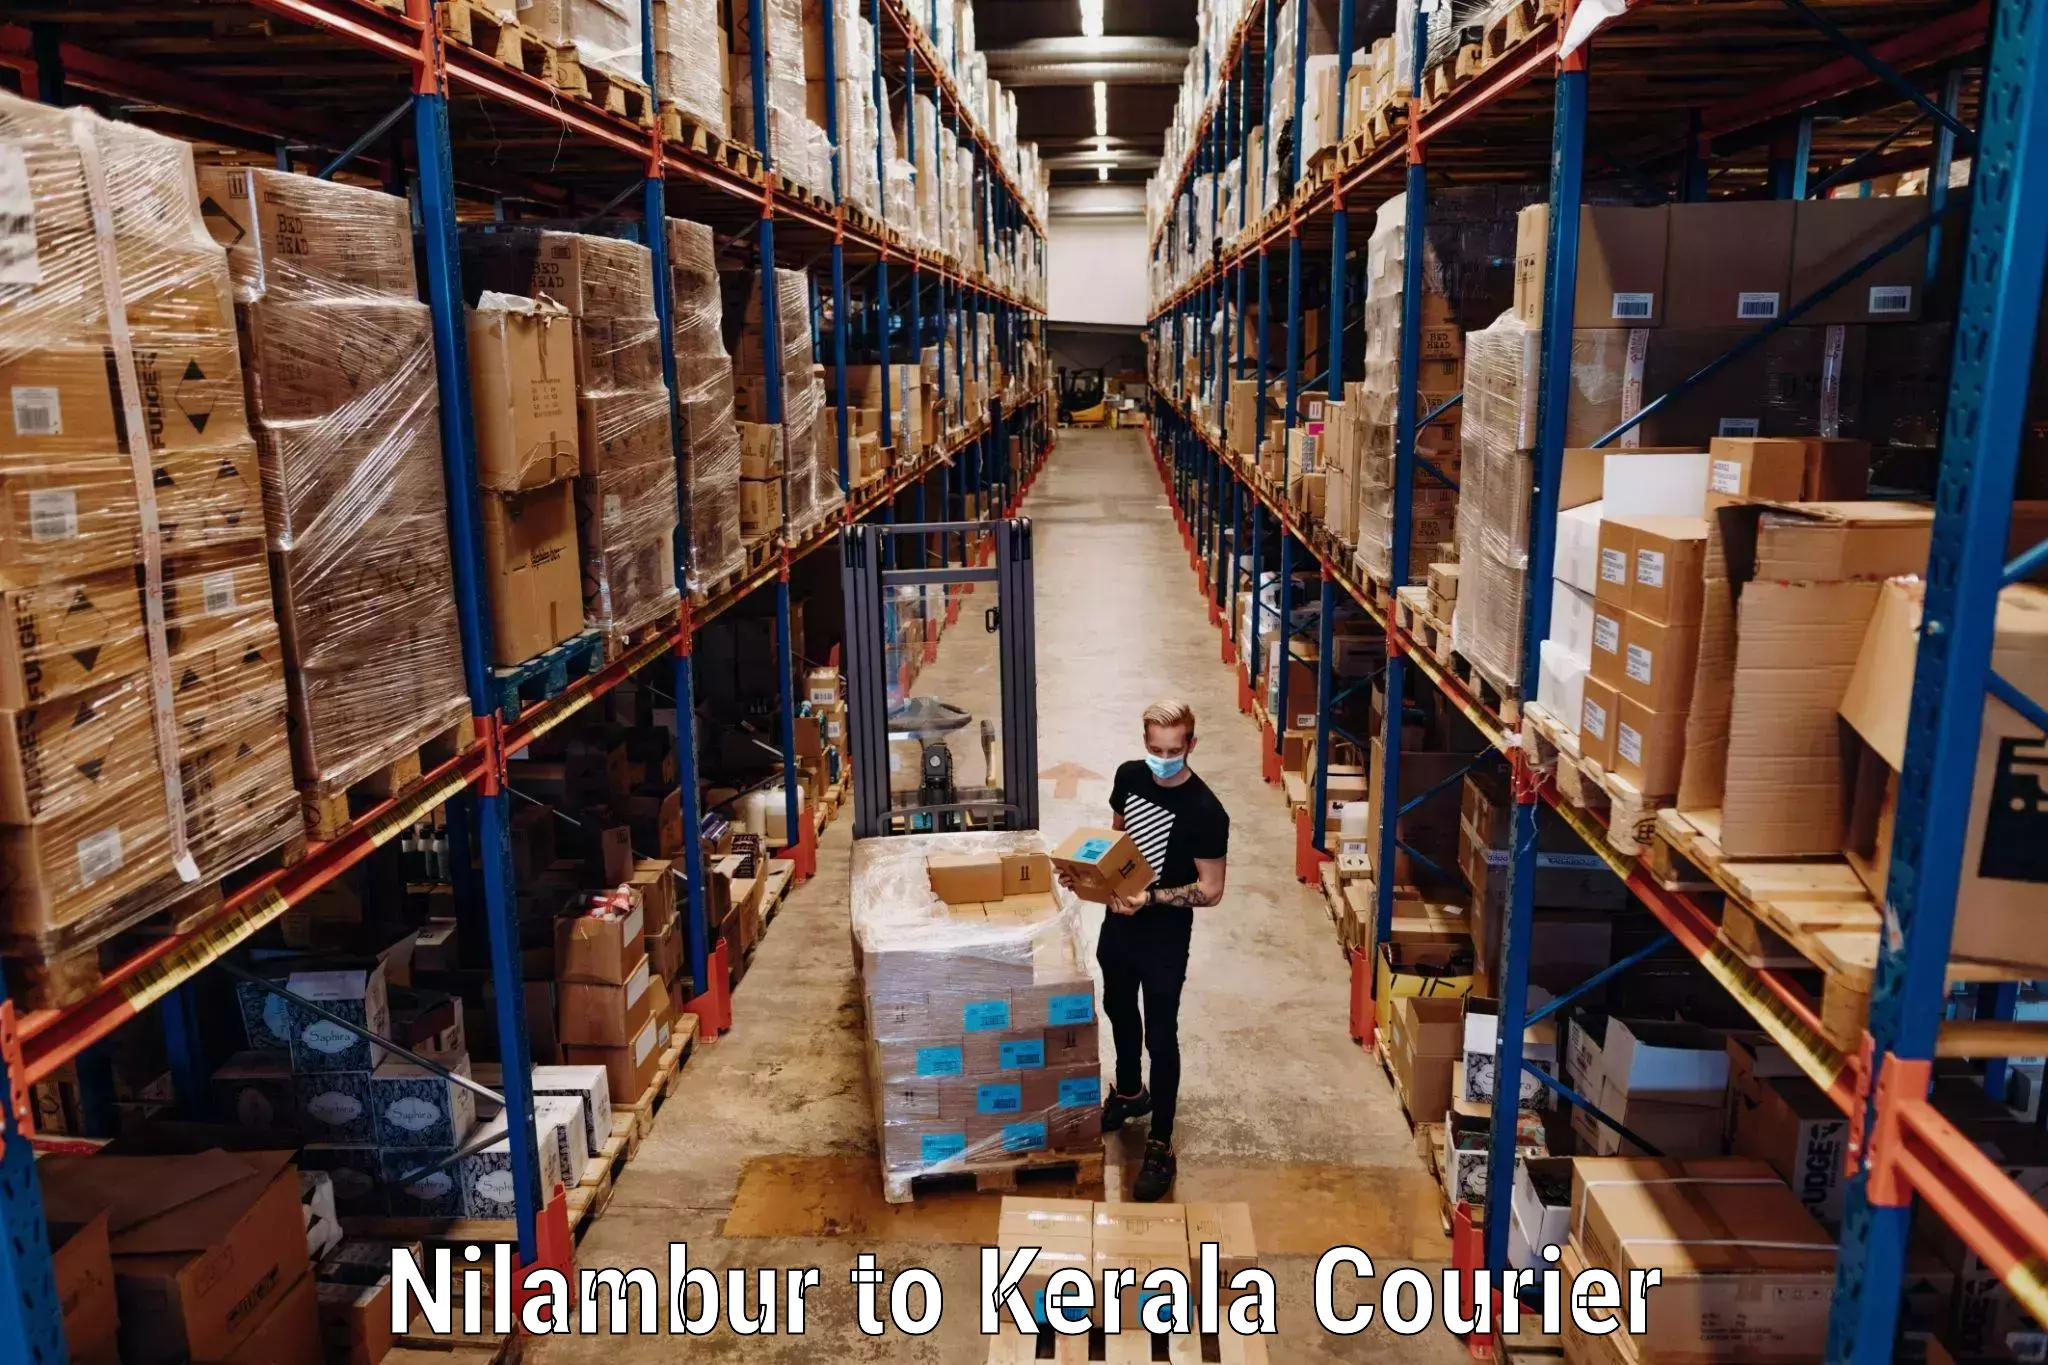 Baggage shipping advice Nilambur to Kuchi